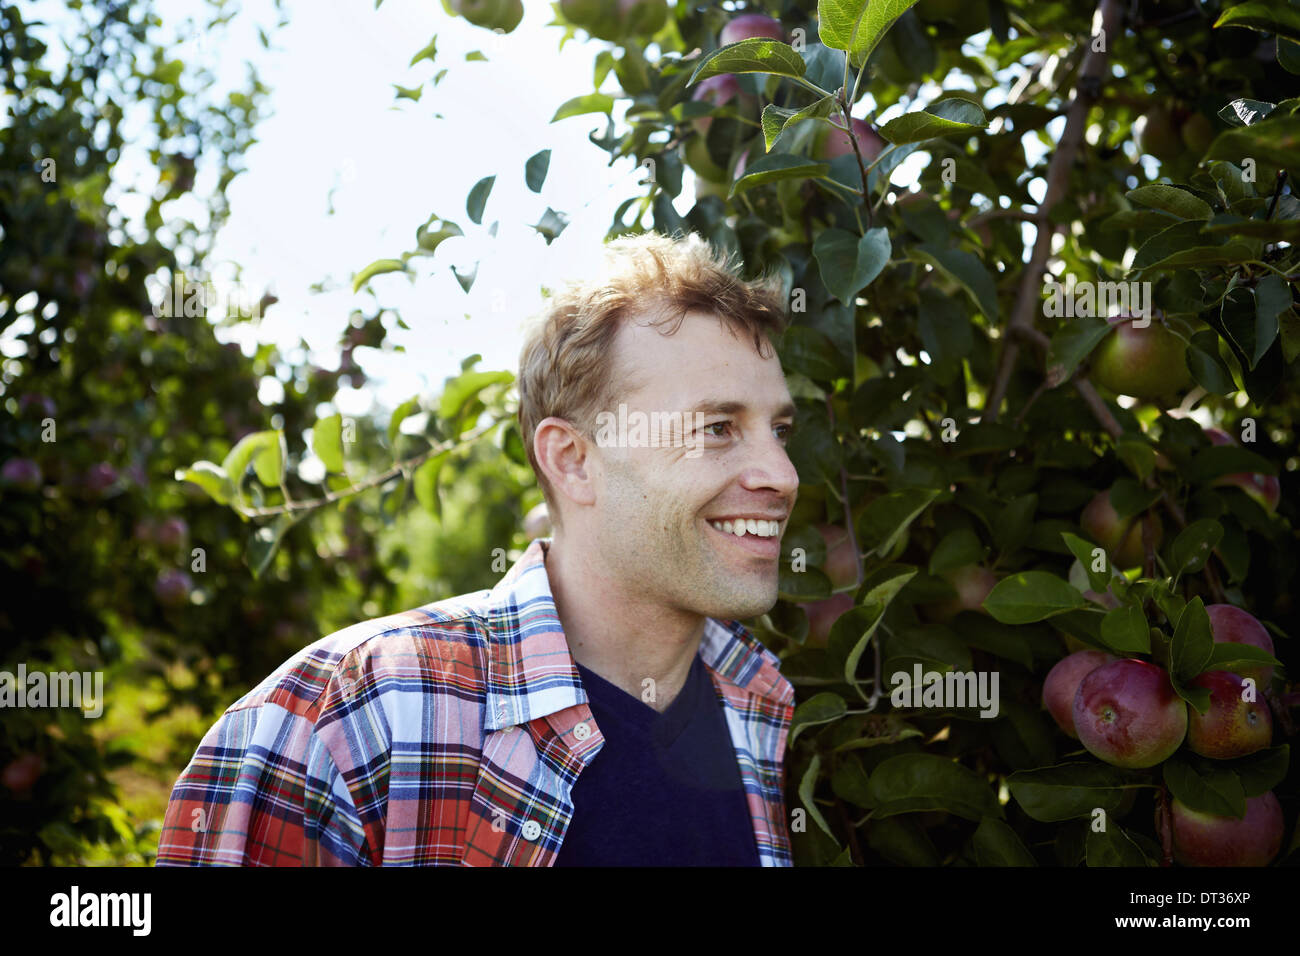 Un uomo in un plaid shirt in un albero di mele Orchard Foto Stock